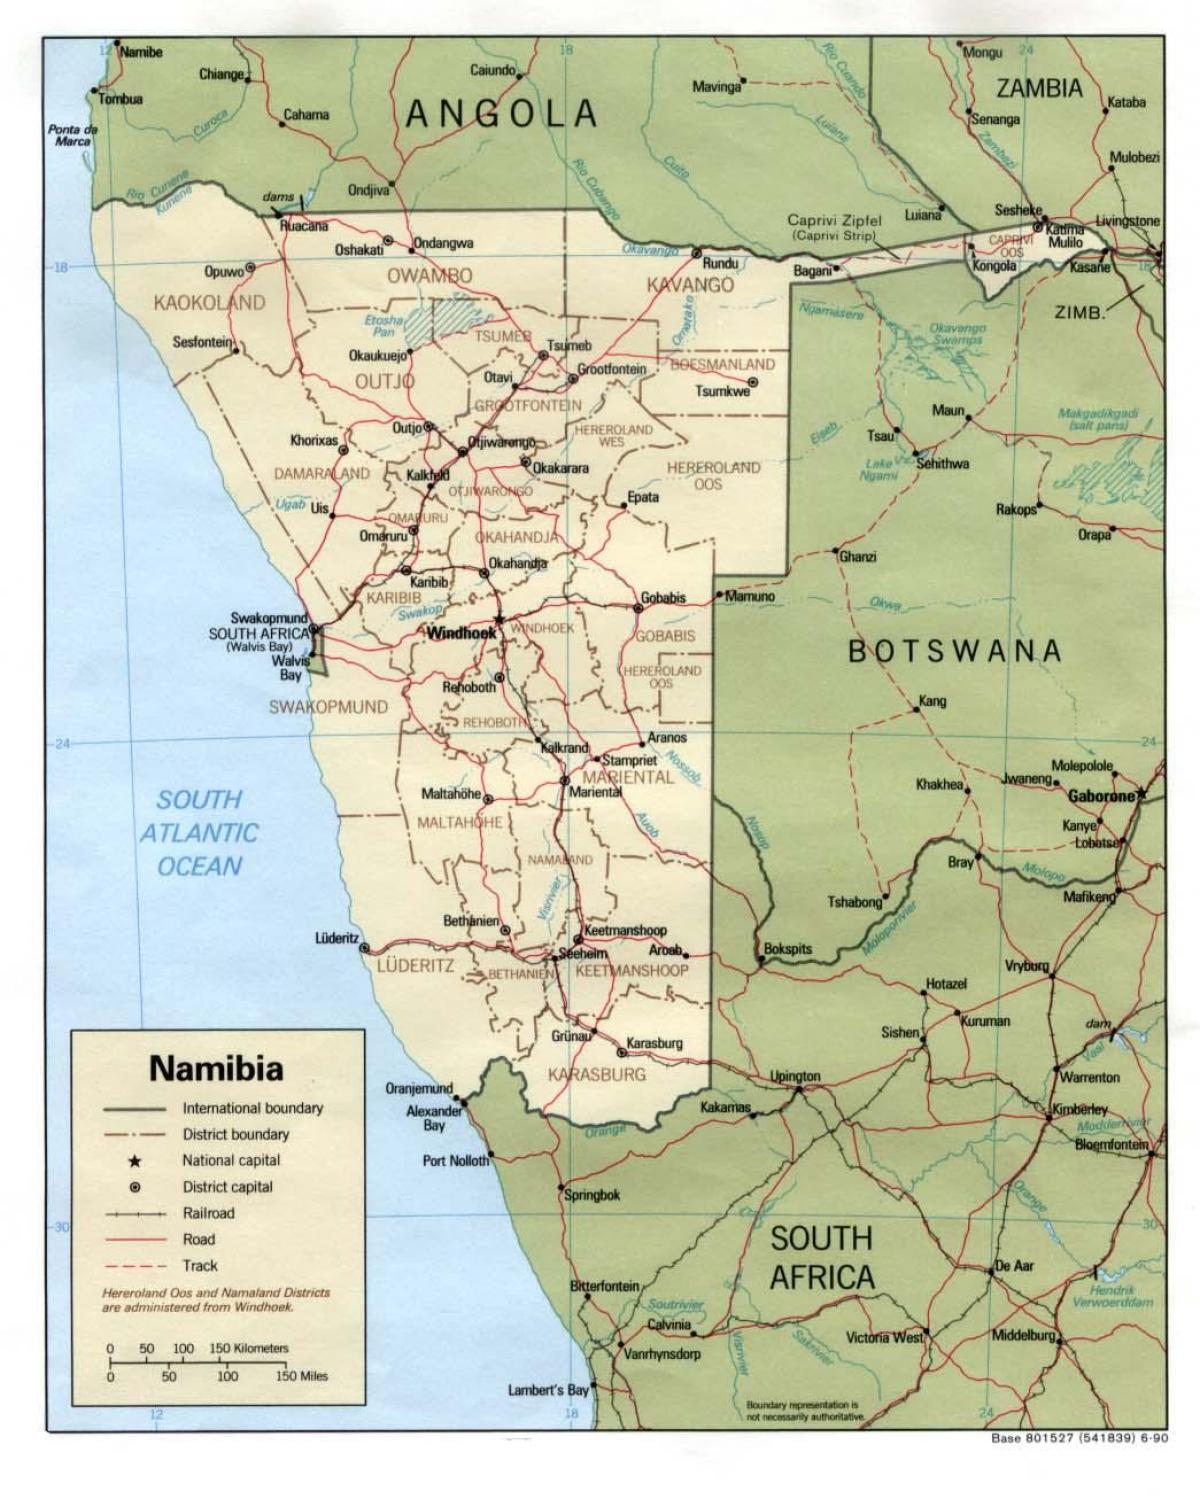 نقشه دقیق از نامیبیا